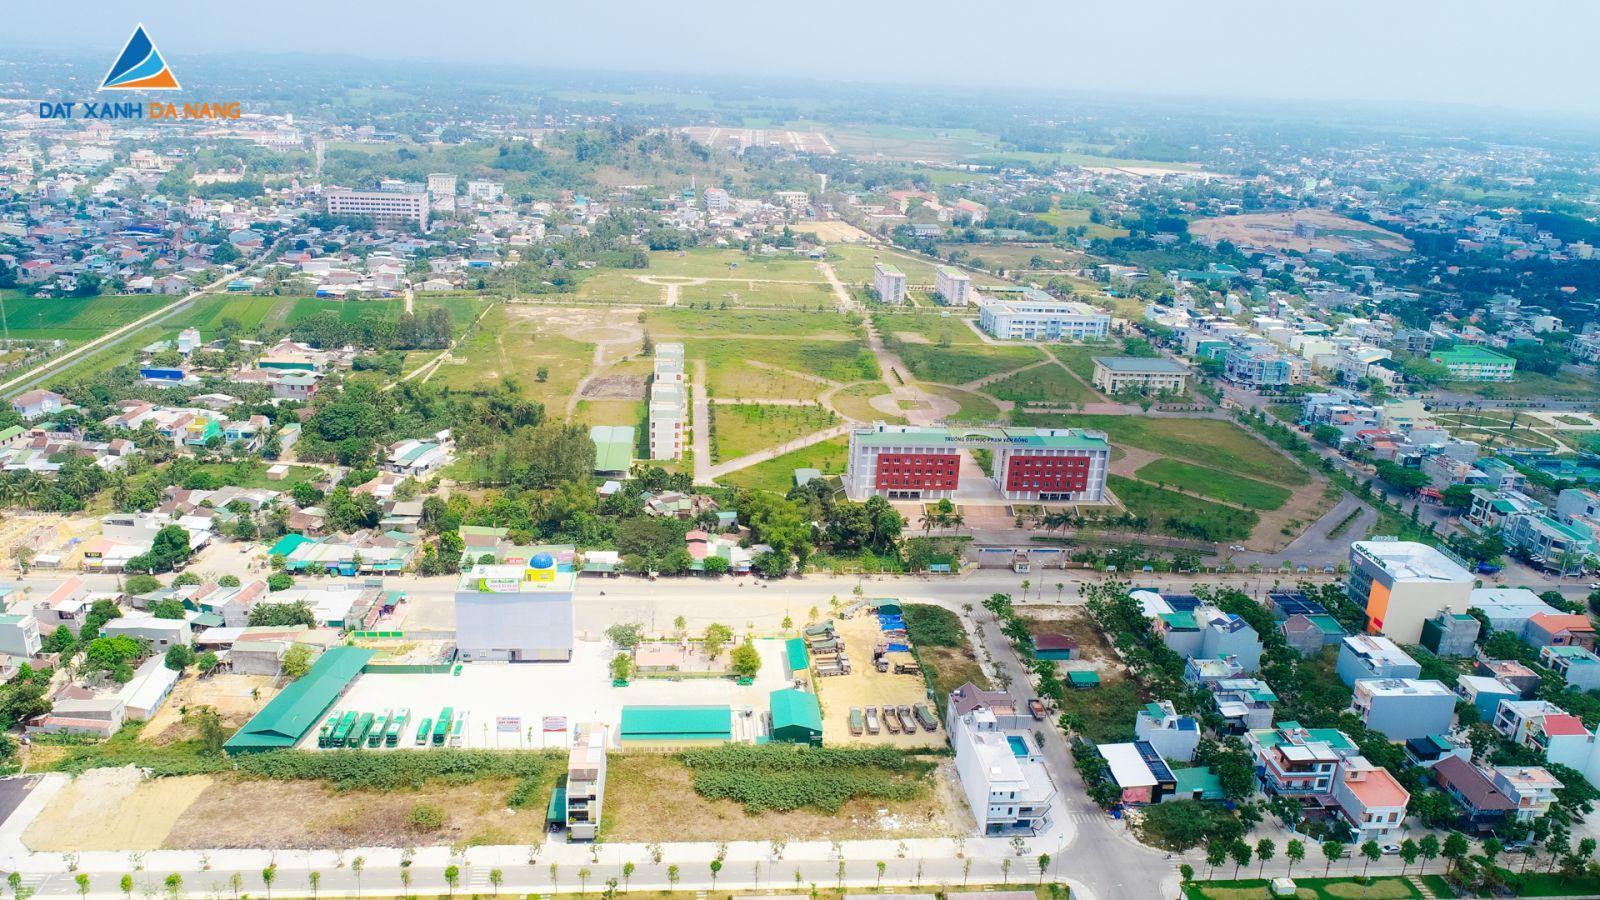 [GÓC CẬP NHẬT] DỰ ÁN THE CENTRAL POINT THÁNG 04/2019 - Viet Nam Smart City